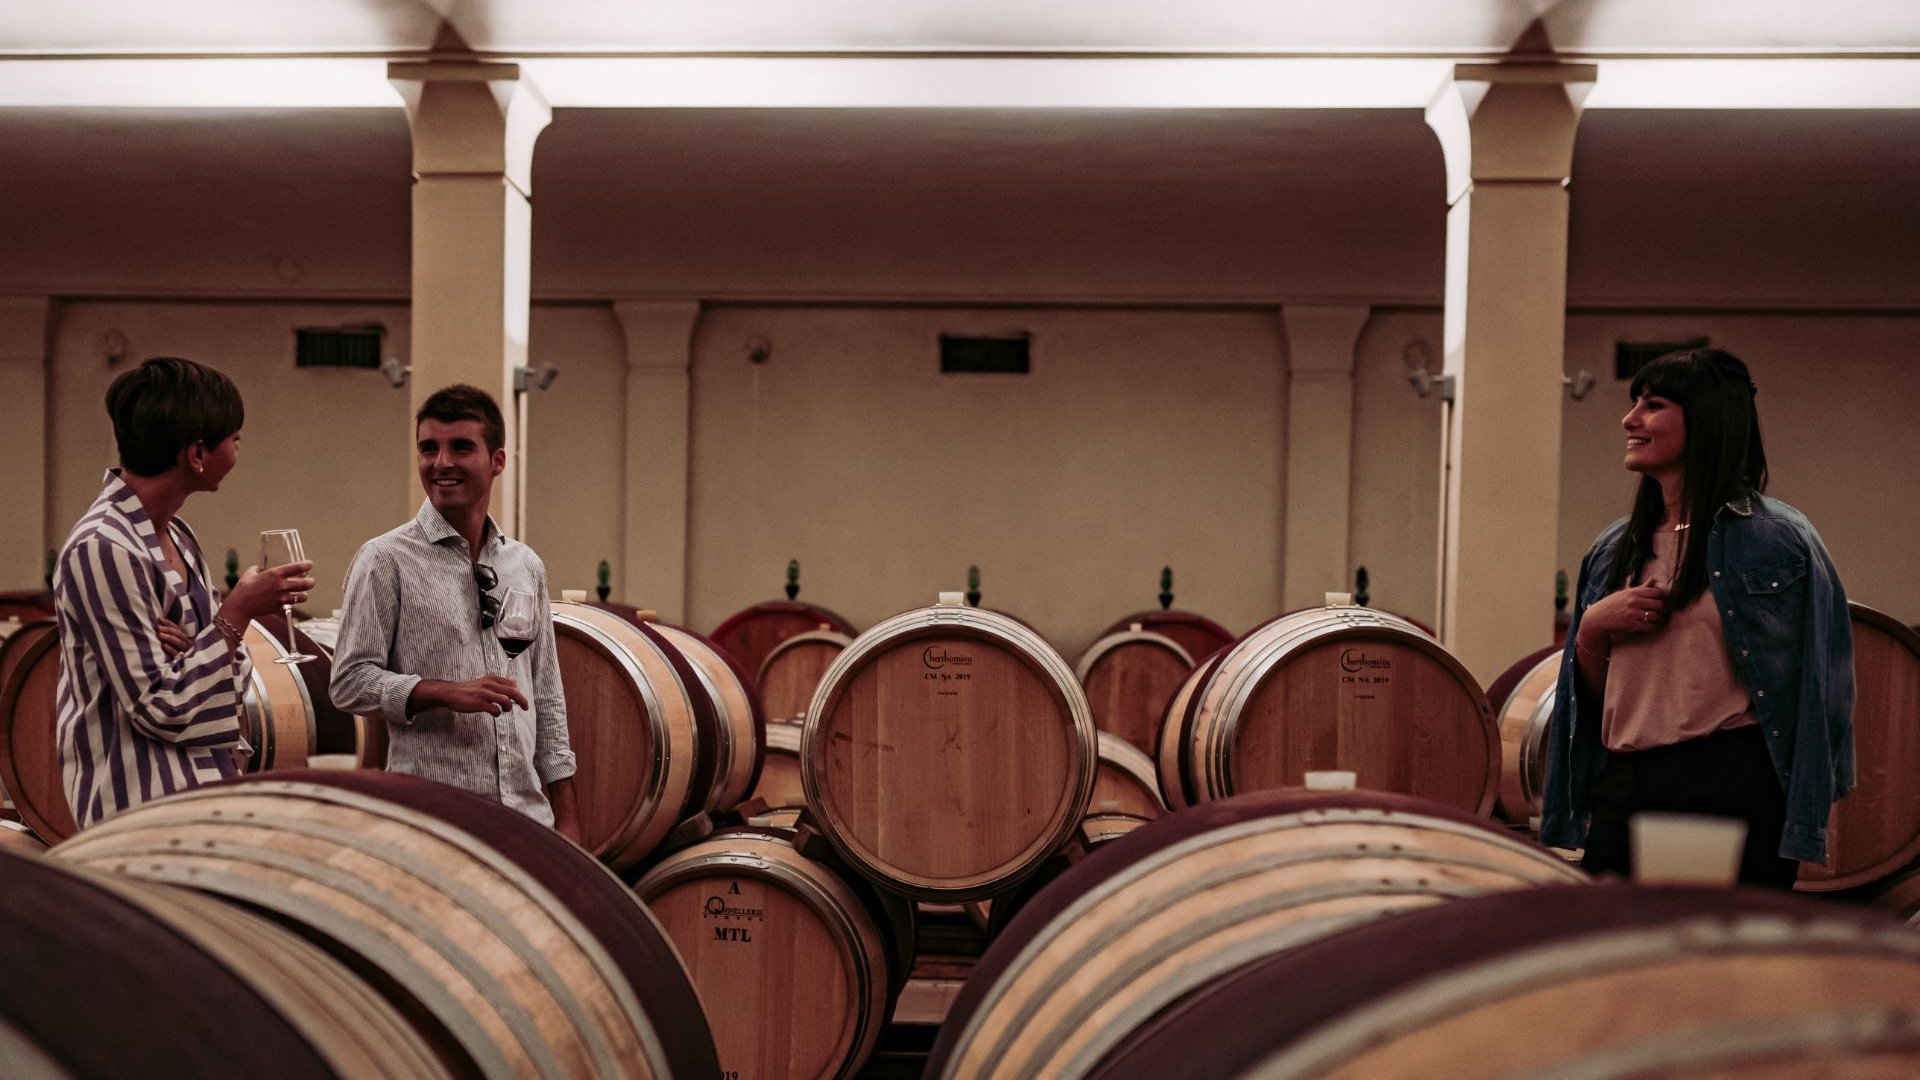 Un’esperienza di visita a tre cantine di Montepulciano adatta a veri amanti del vino